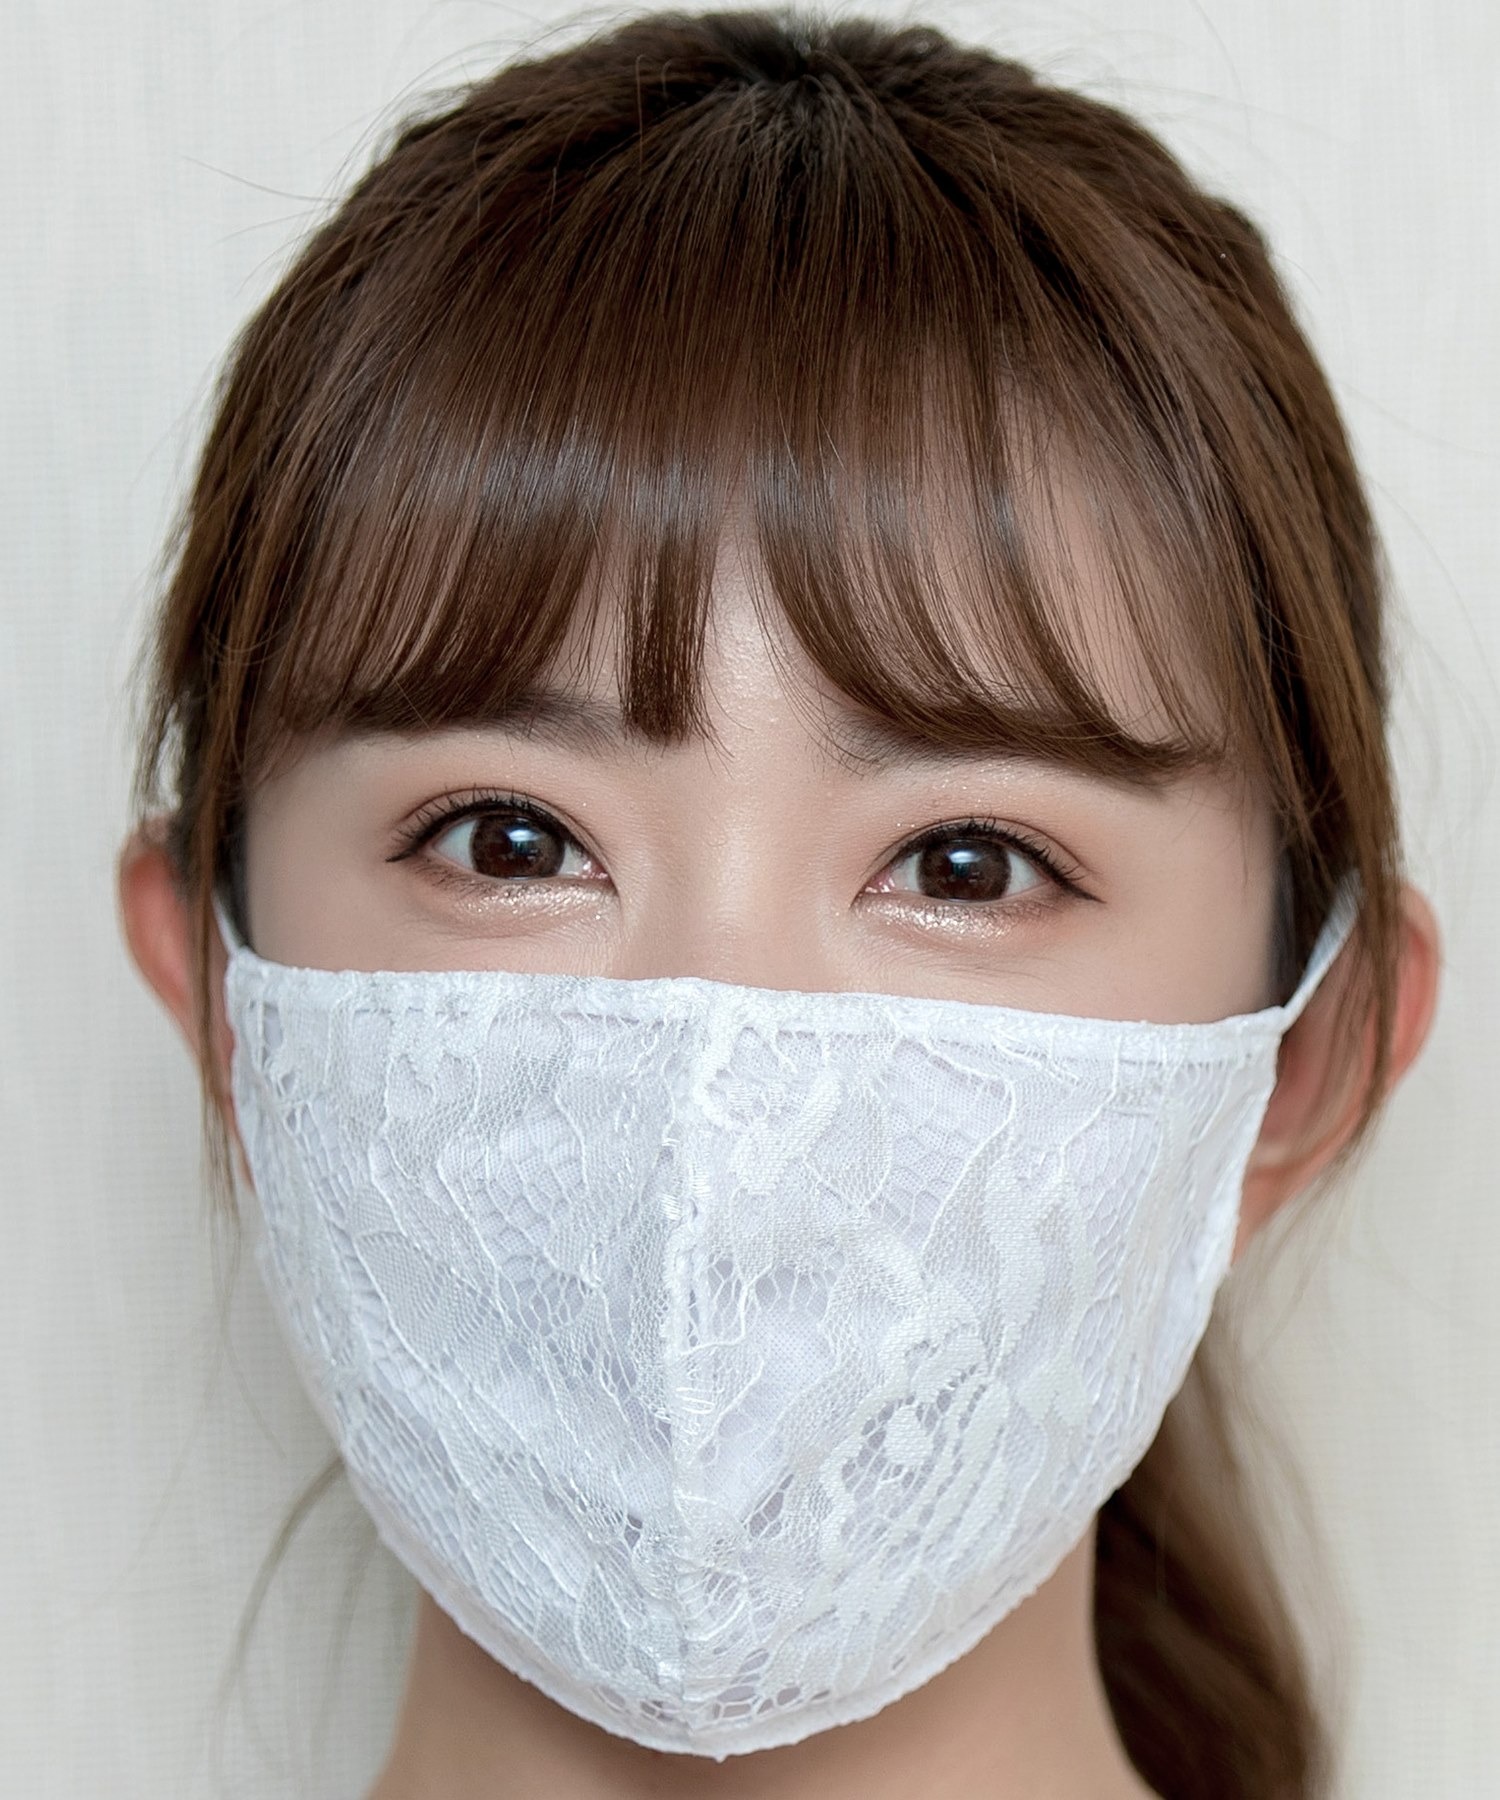 DAY 誠実 【83%OFF!】 CLOSET洗えるキレイめレースマスク 2枚セット